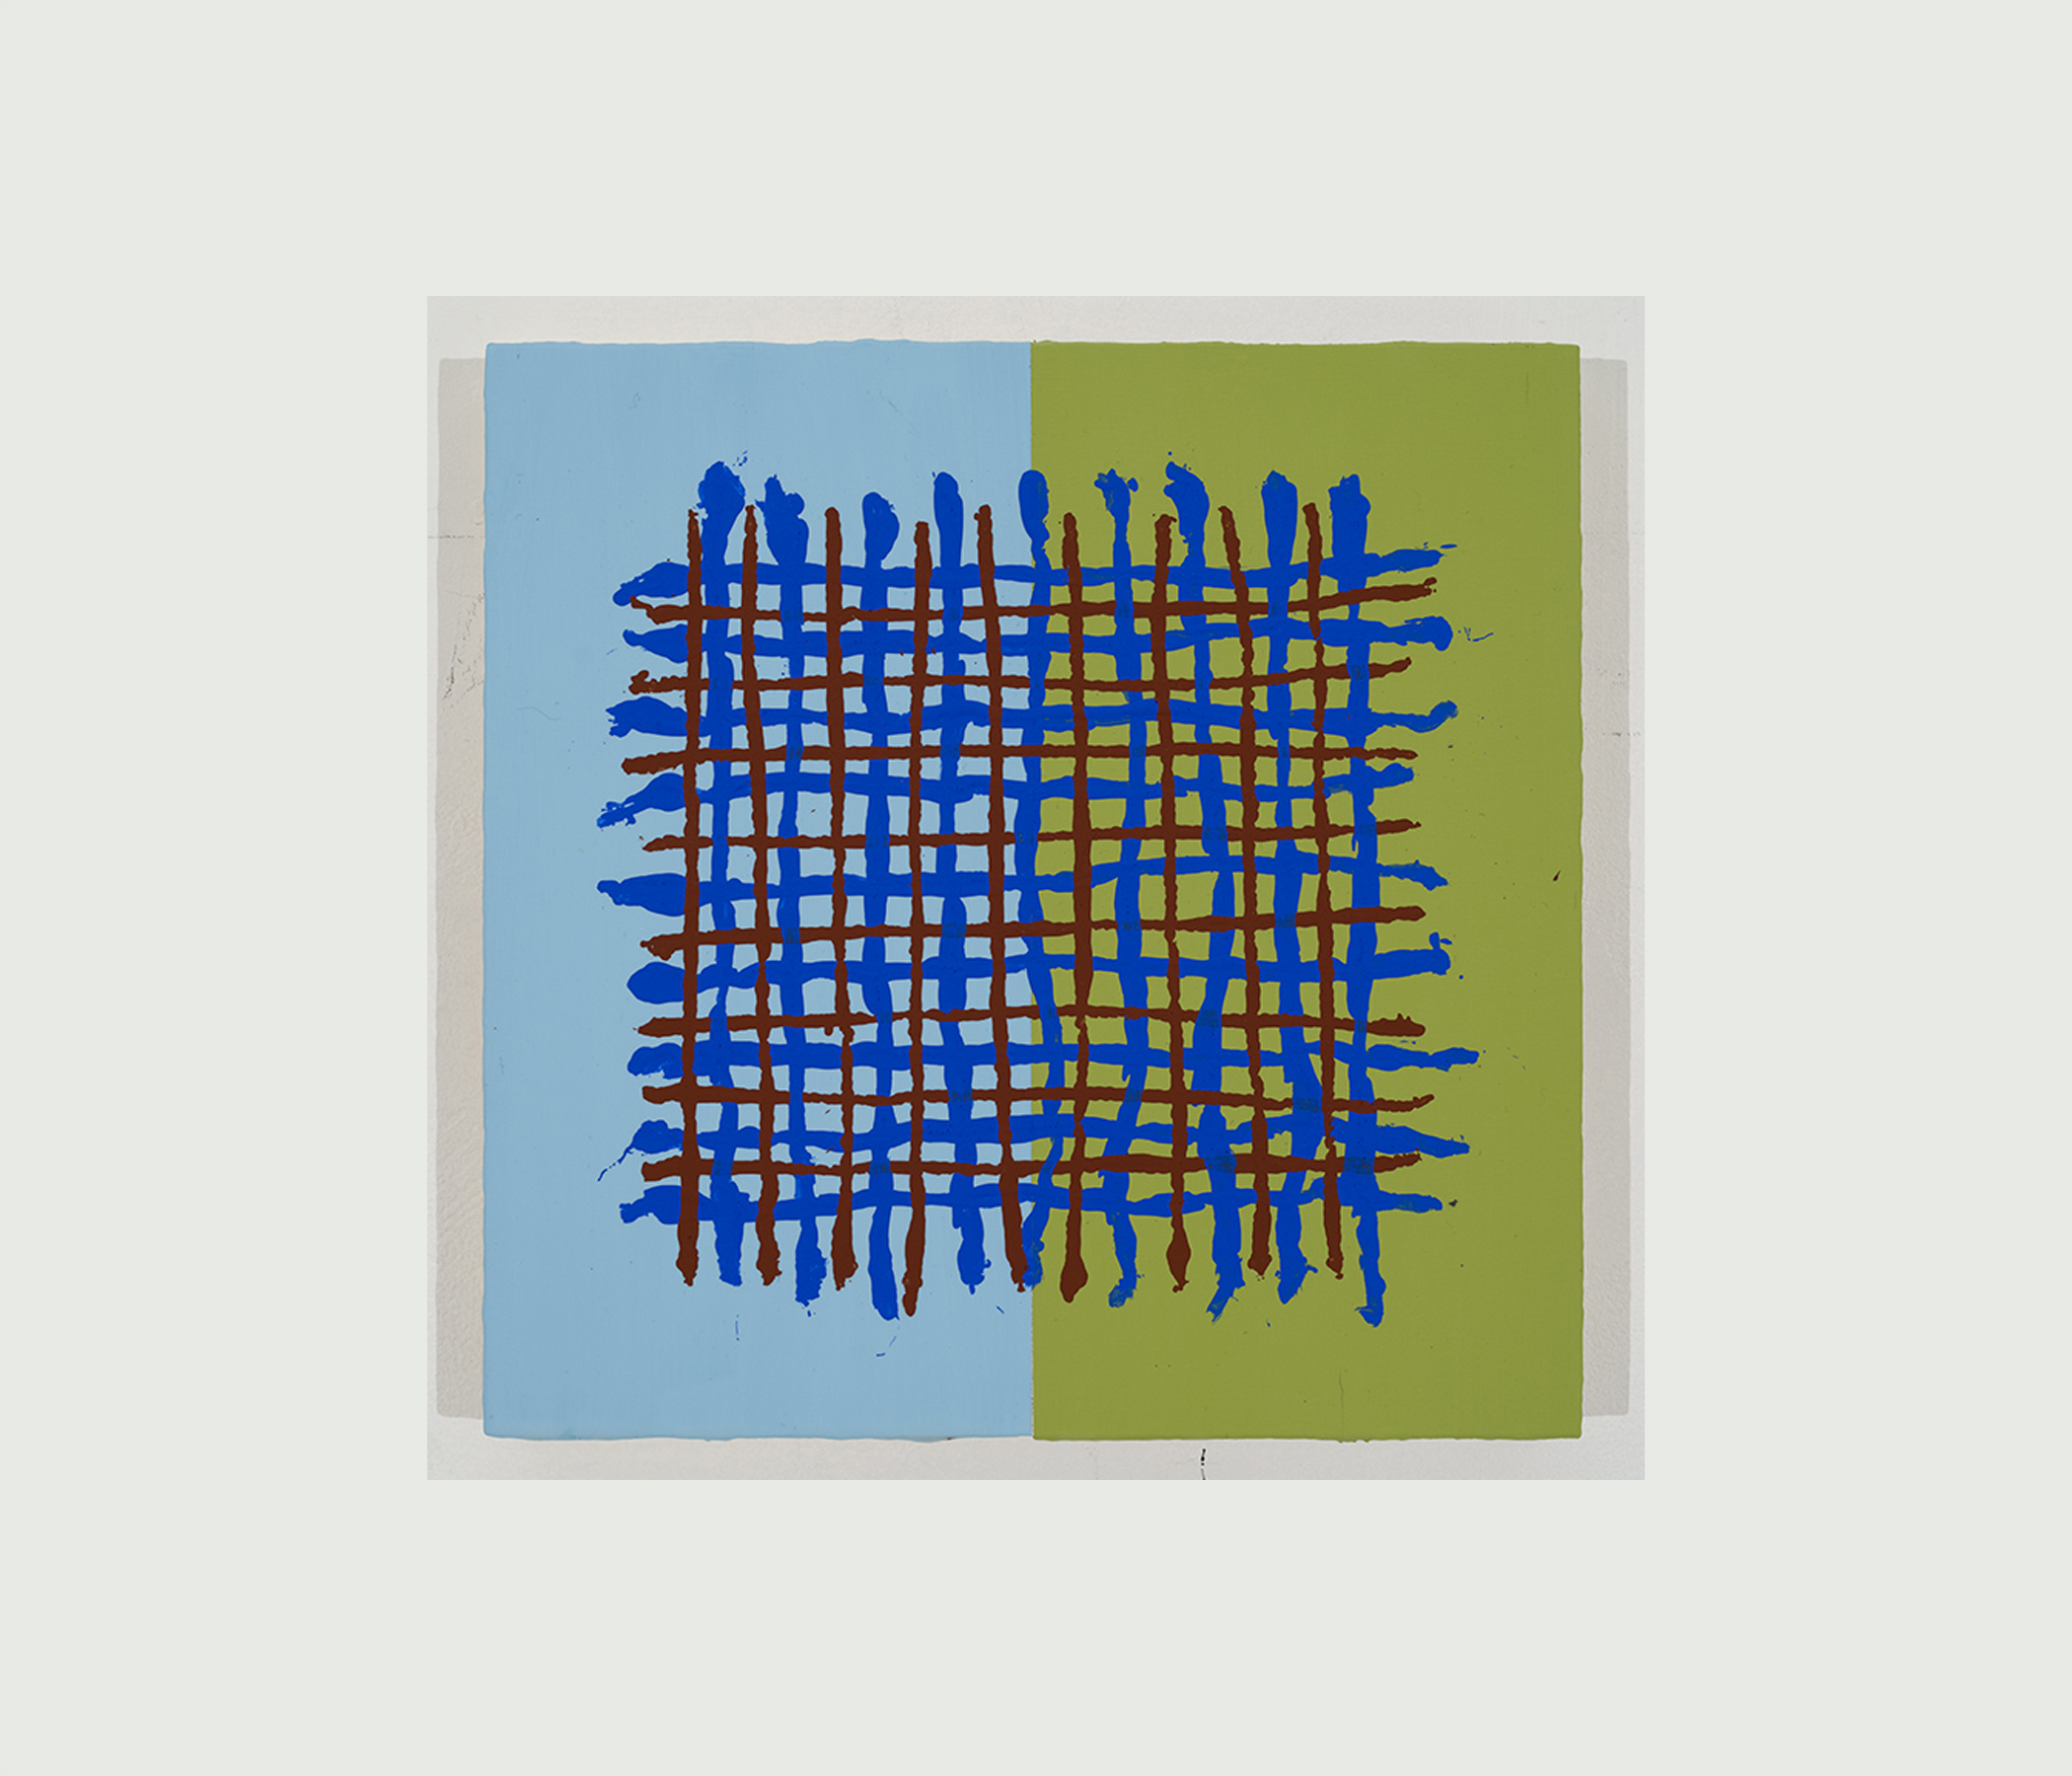 Petits tableaux et études [Suite Cluster], 2014 – 2019